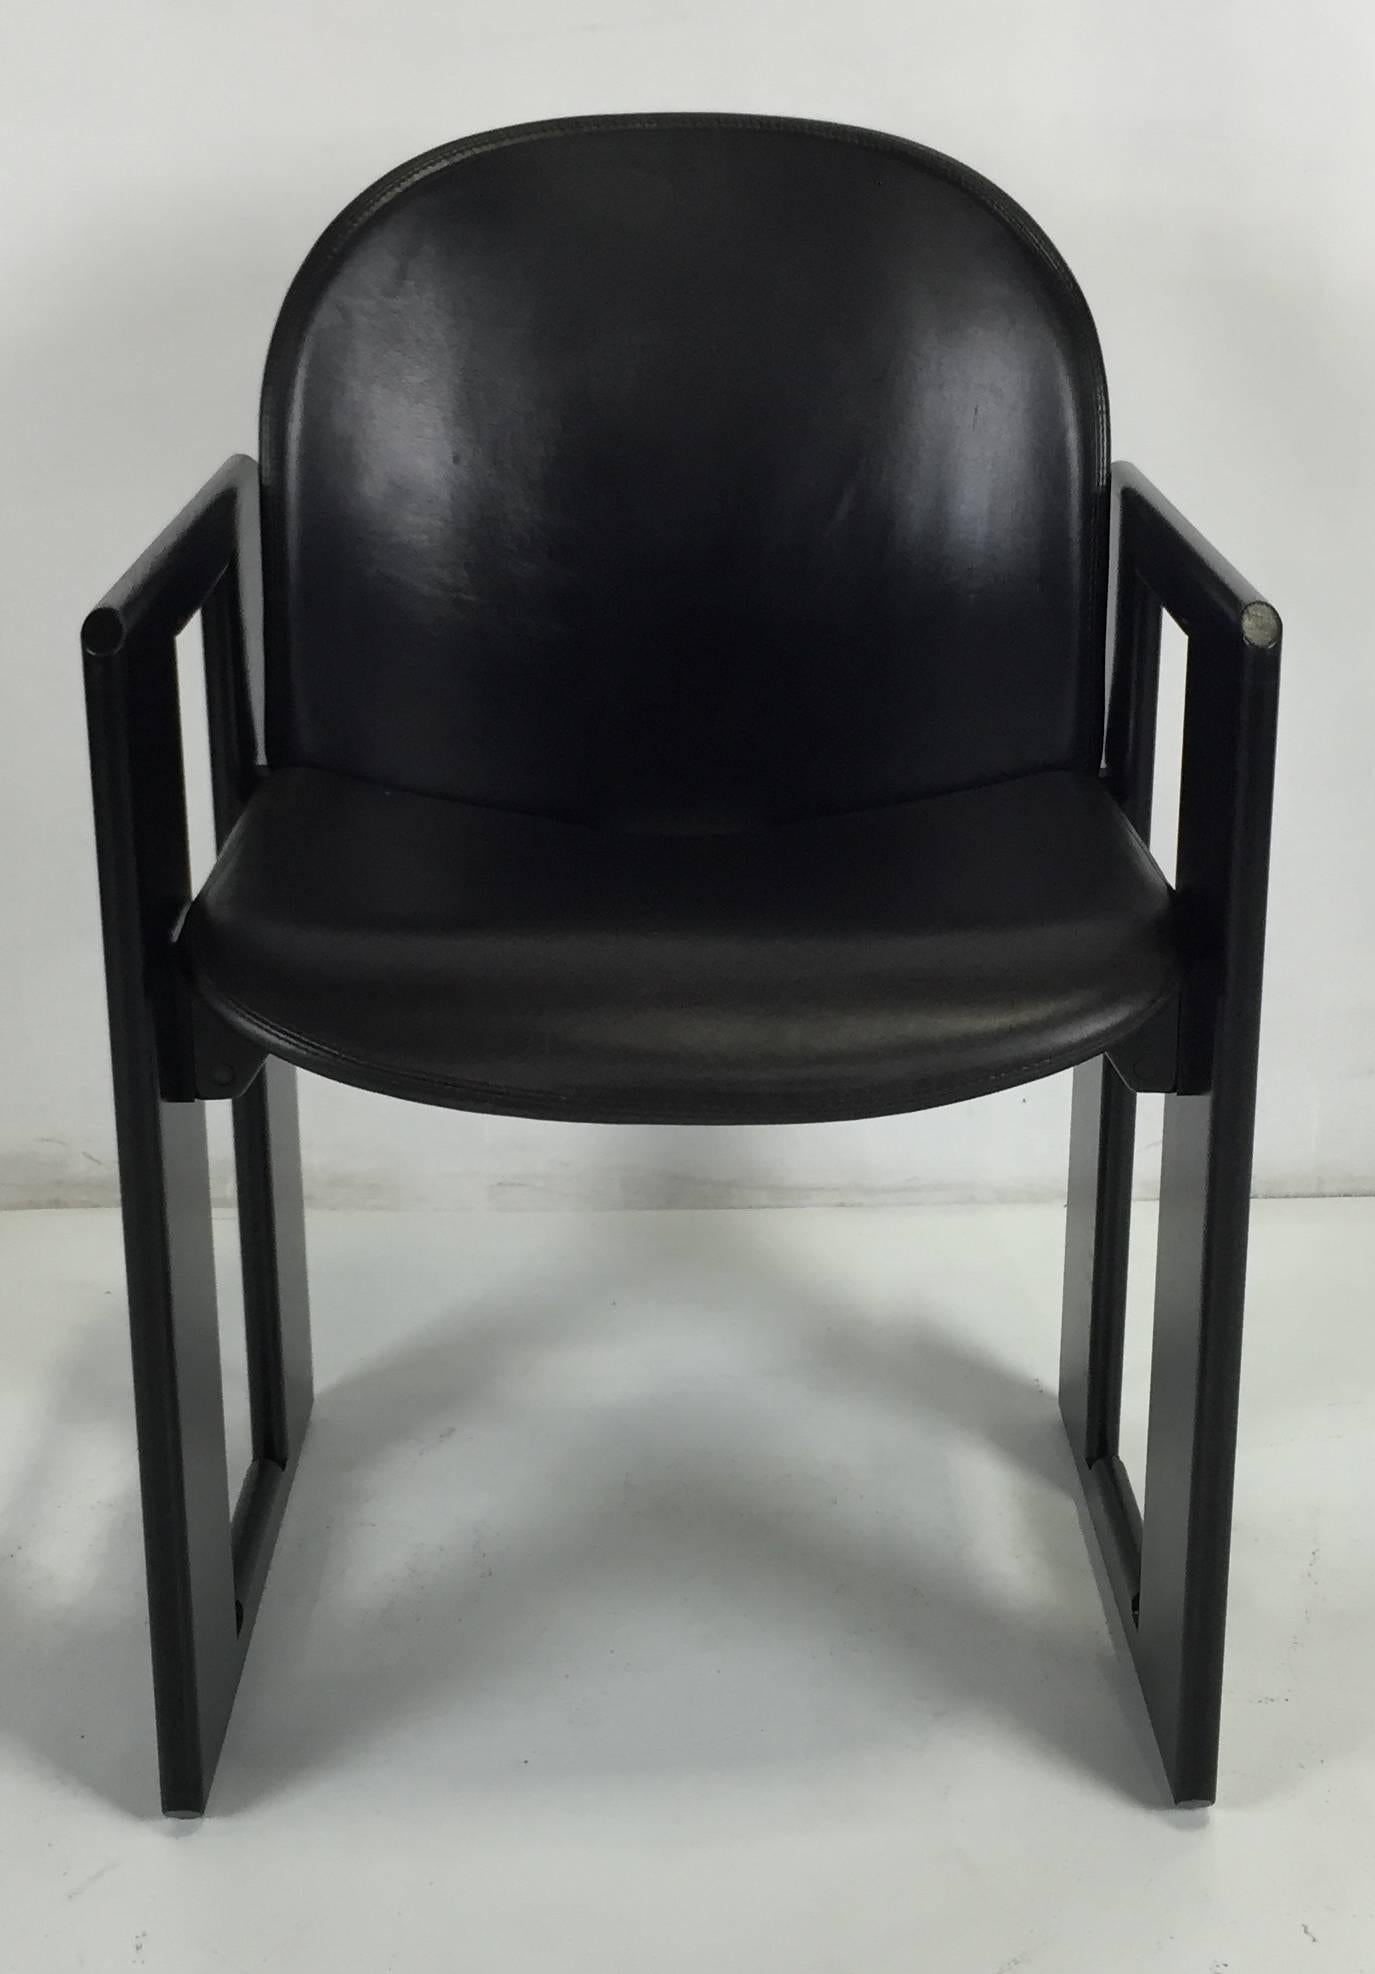 Ensemble de chaises de salle à manger en cuir Dialogo par Tobia Scarpa pour B&B Italia. Les cadres ont été fraîchement repeints et les sièges en cuir sont dans un état d'origine fantastique.  Dès leur conception, ces chaises uniques et magnifiques